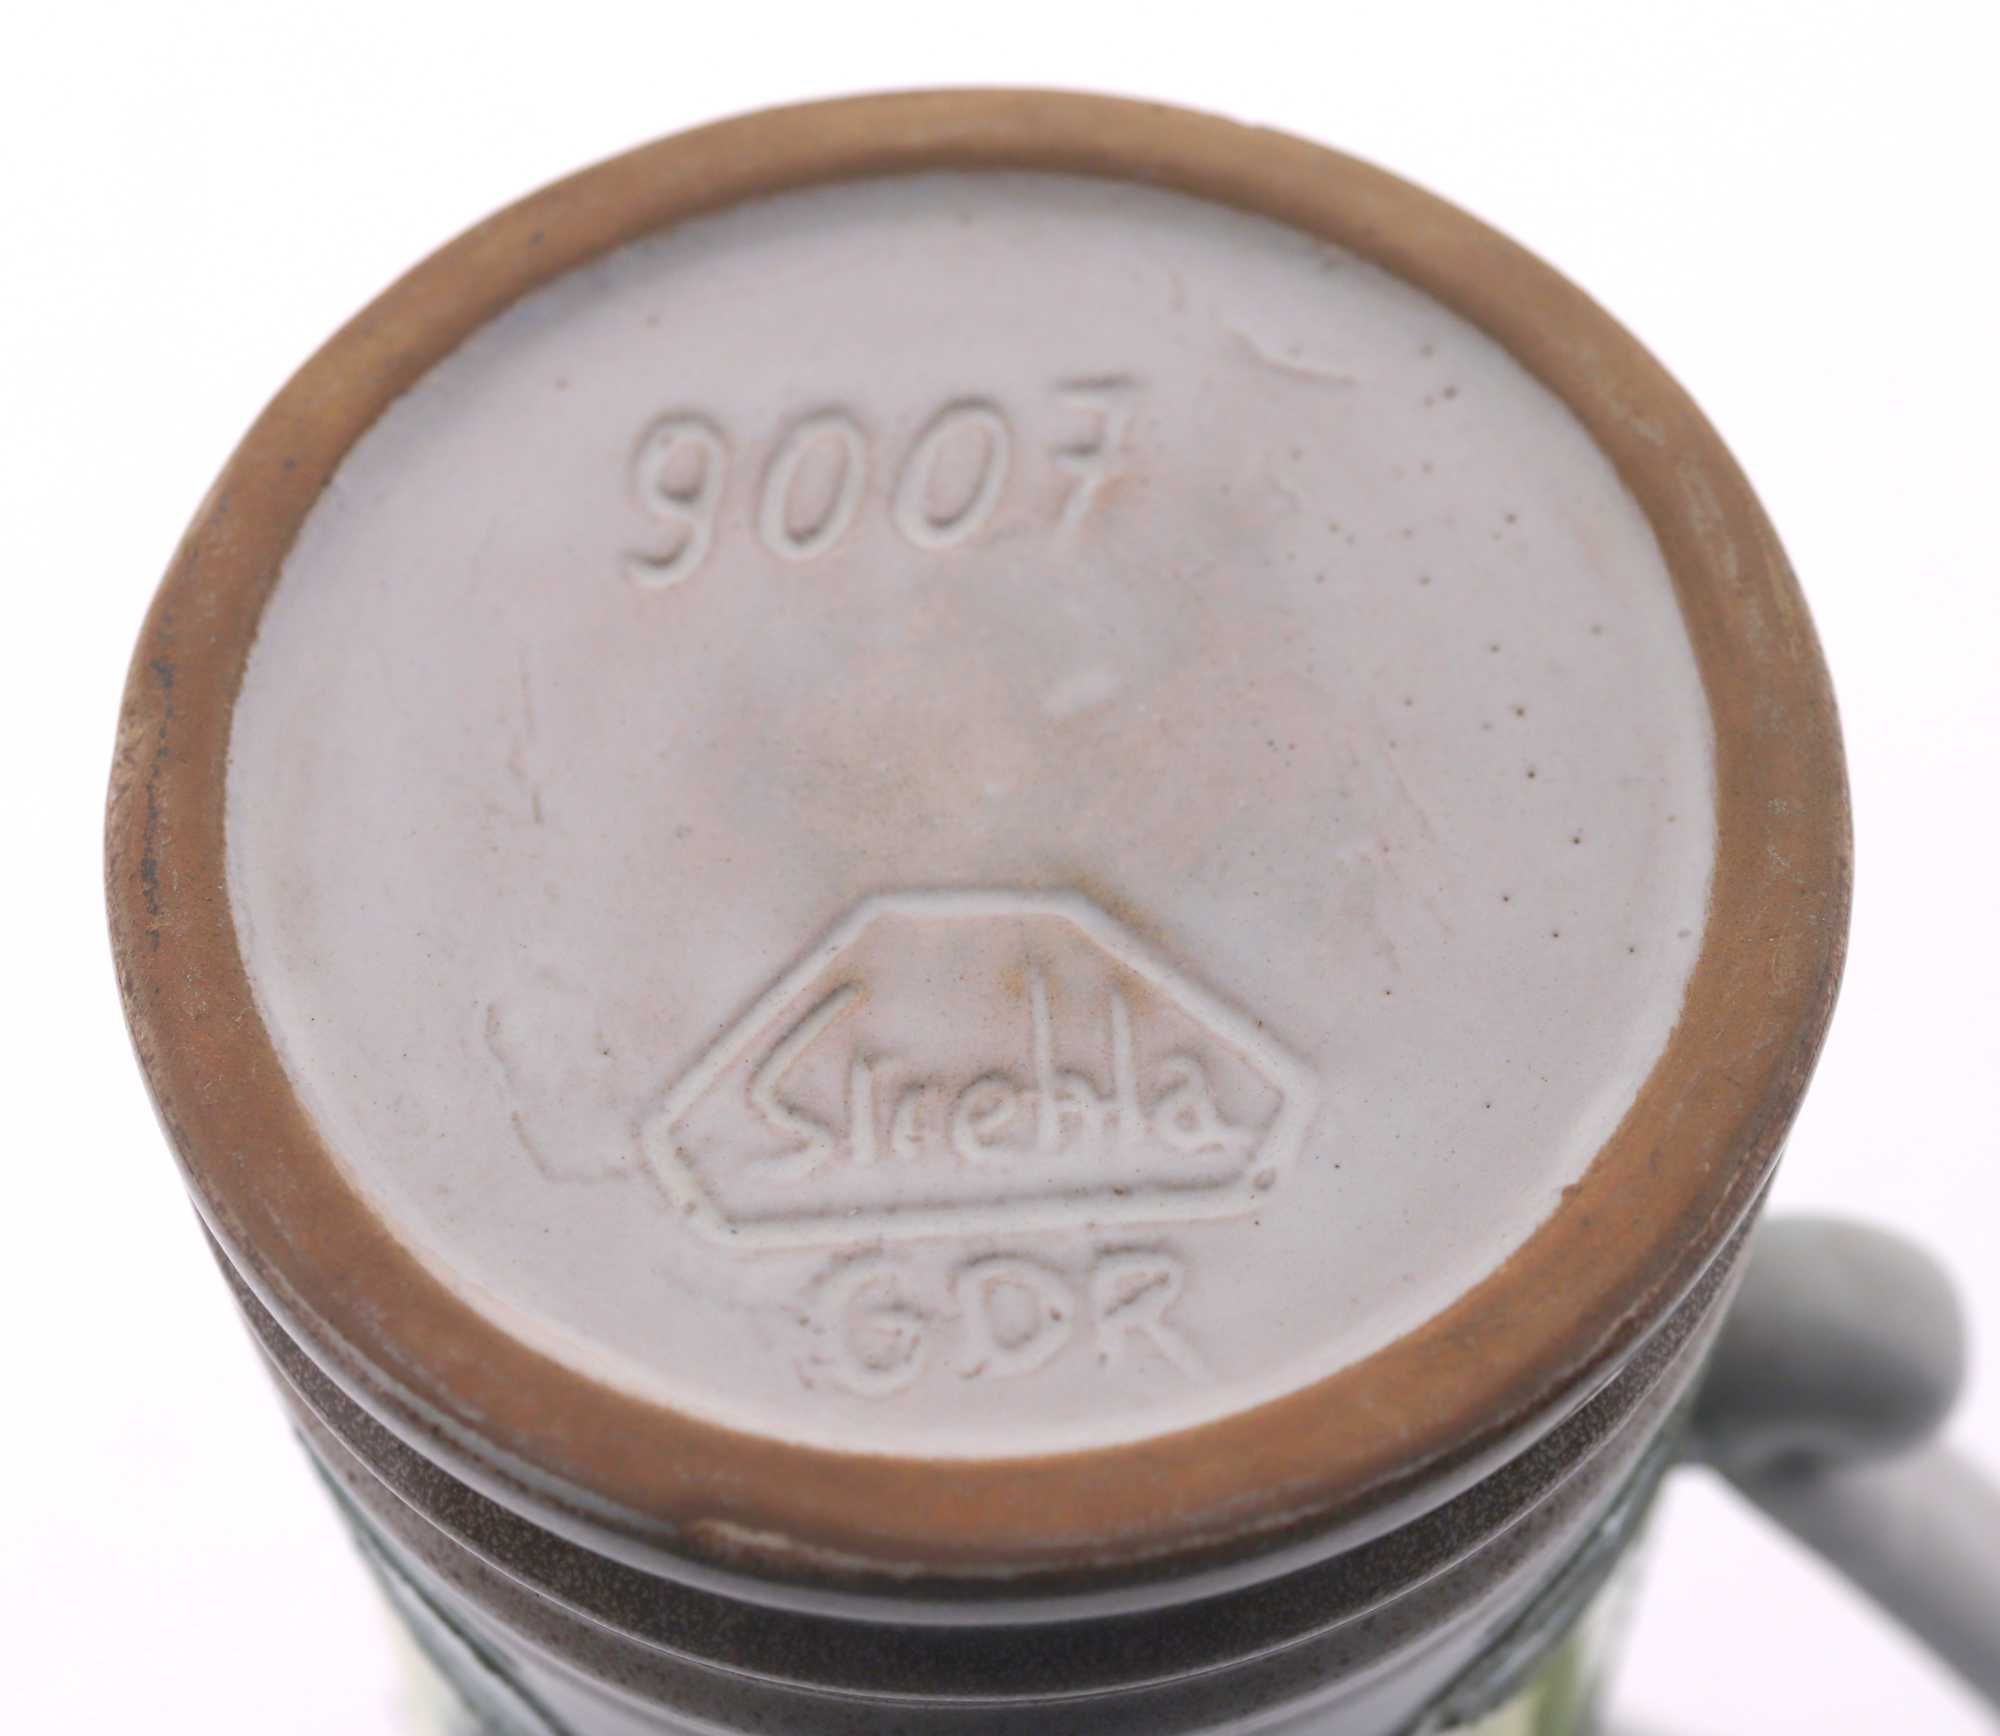 Dzbanek ceramiczny 9007, Strehla Keramik GDR, Niemcy, lata 70.